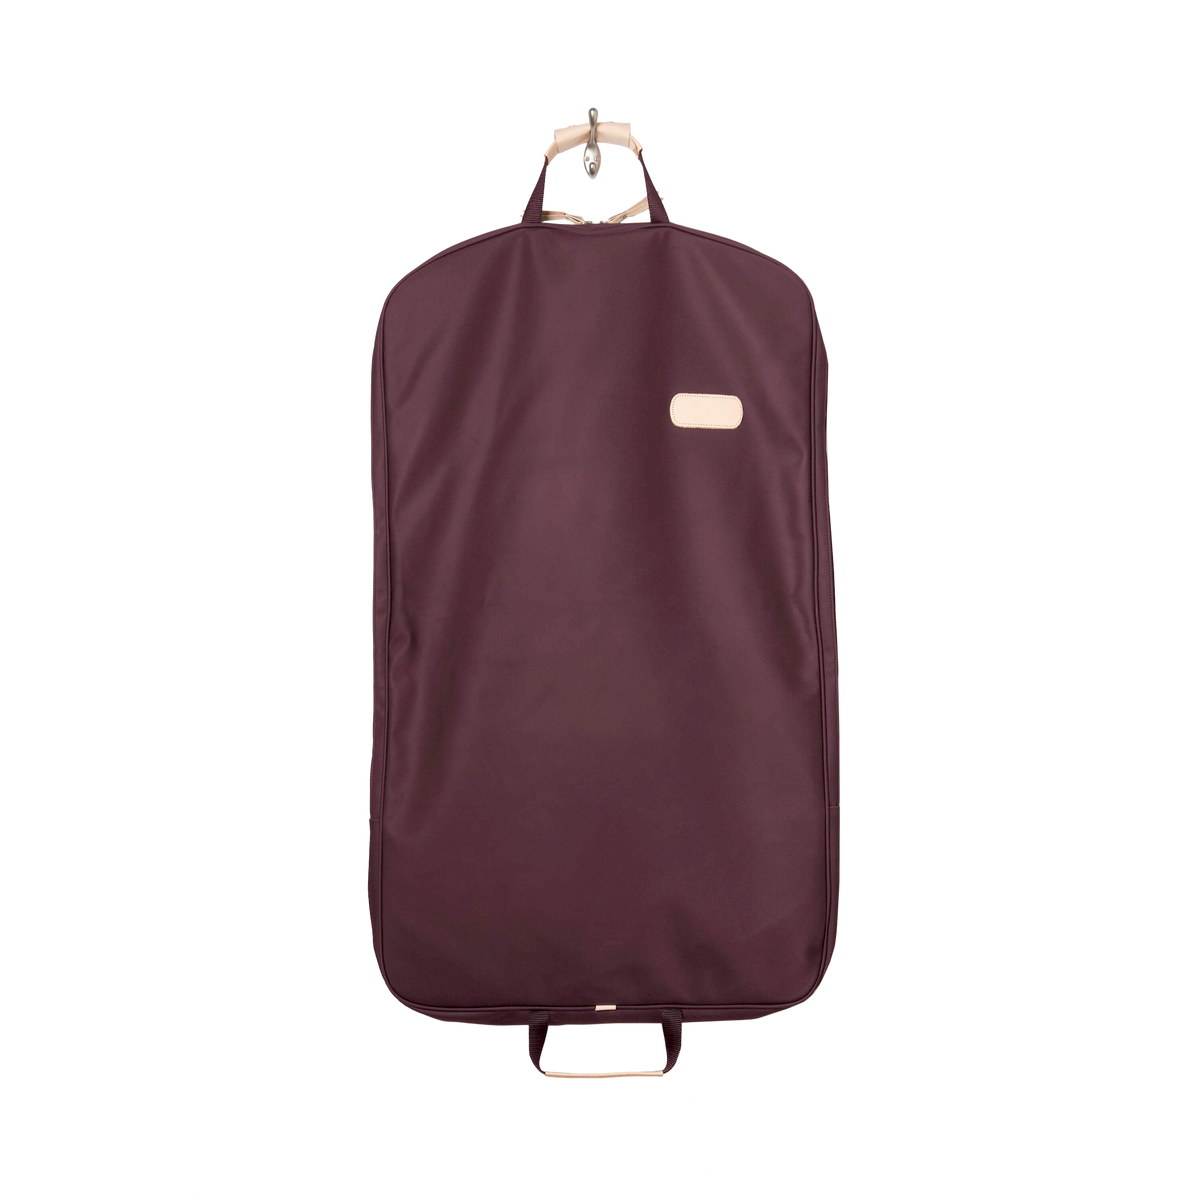 Leather hanging garment bag for travel lavander+dark red - 27958